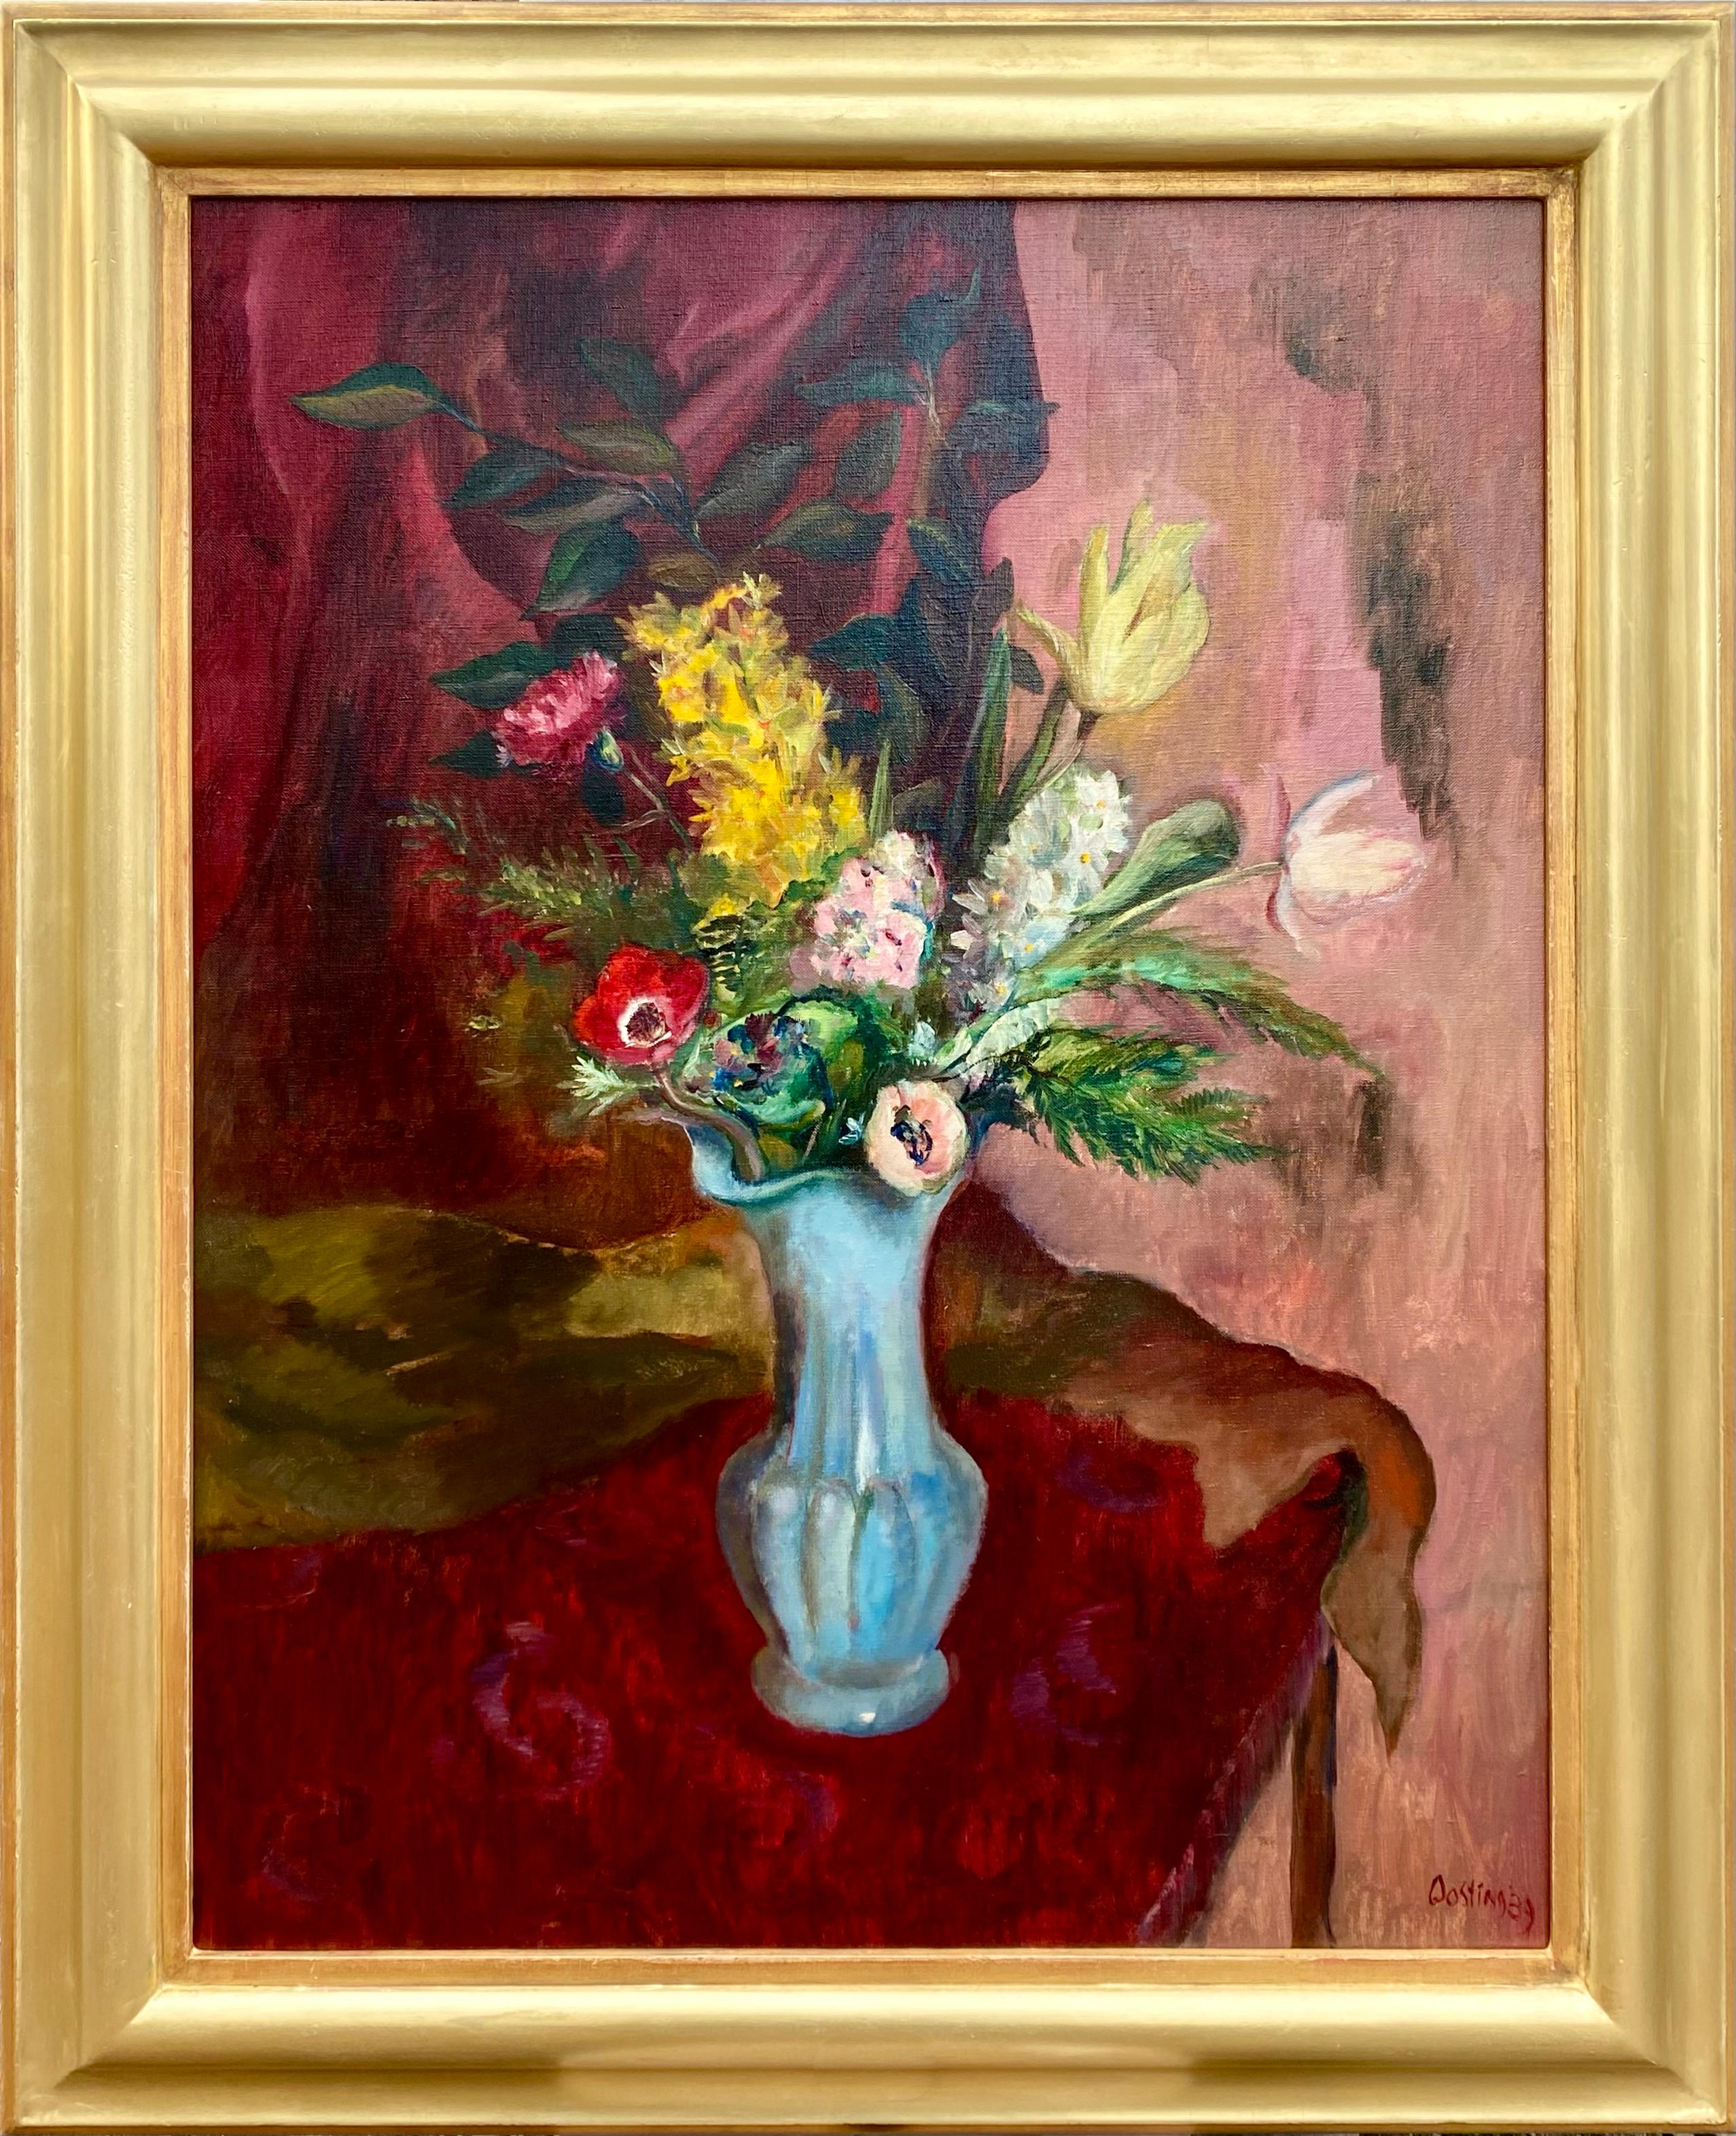 'Spring Flowers in a Vase' by Jeanne Bieruma Oosting, 1898 - 1994, Dutch